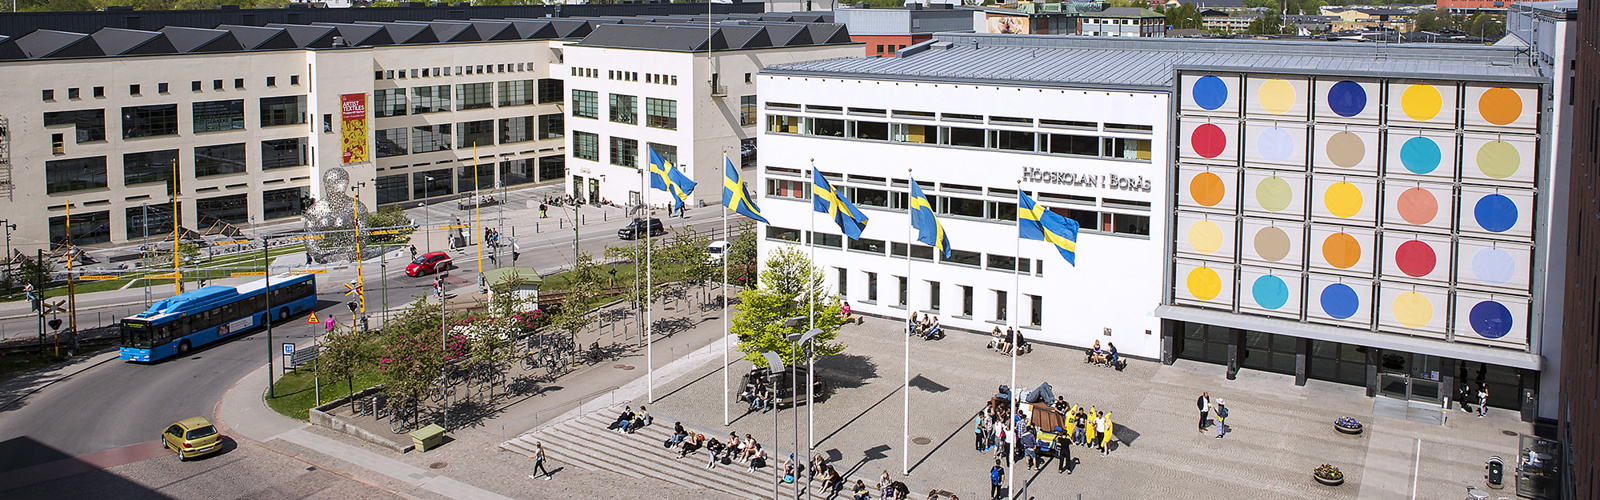 HR-Lön - Högskolan i Borås